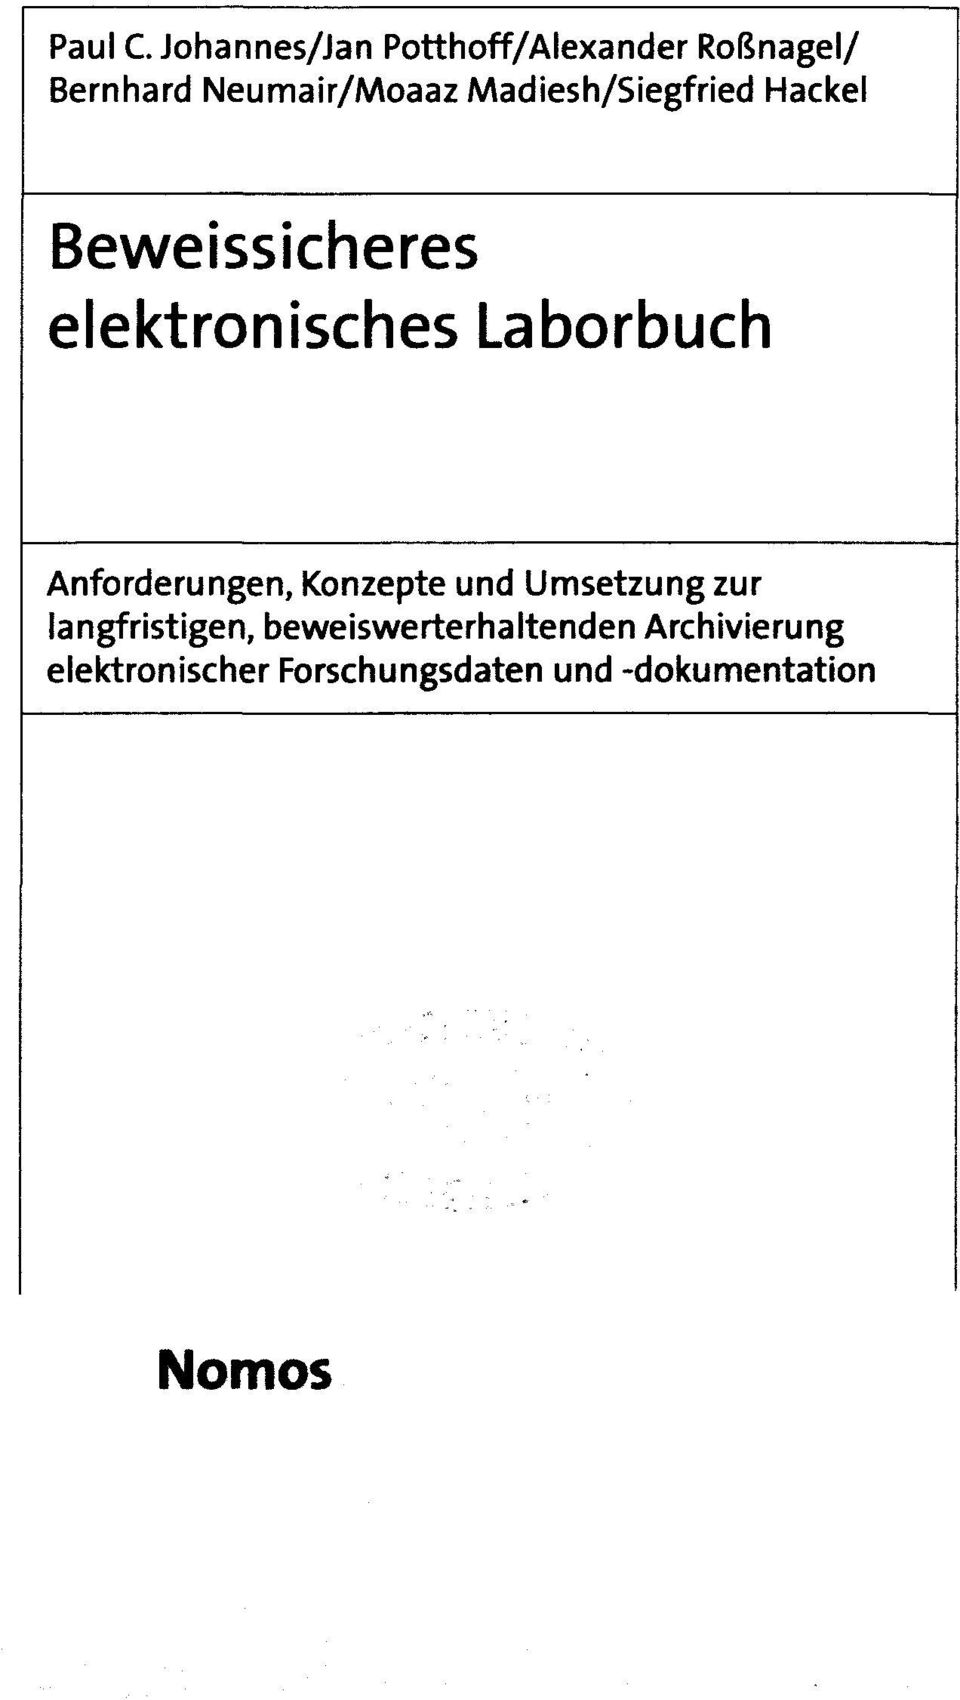 Madiesh/Siegfried Beweissicheres elektronisches Laborbuch